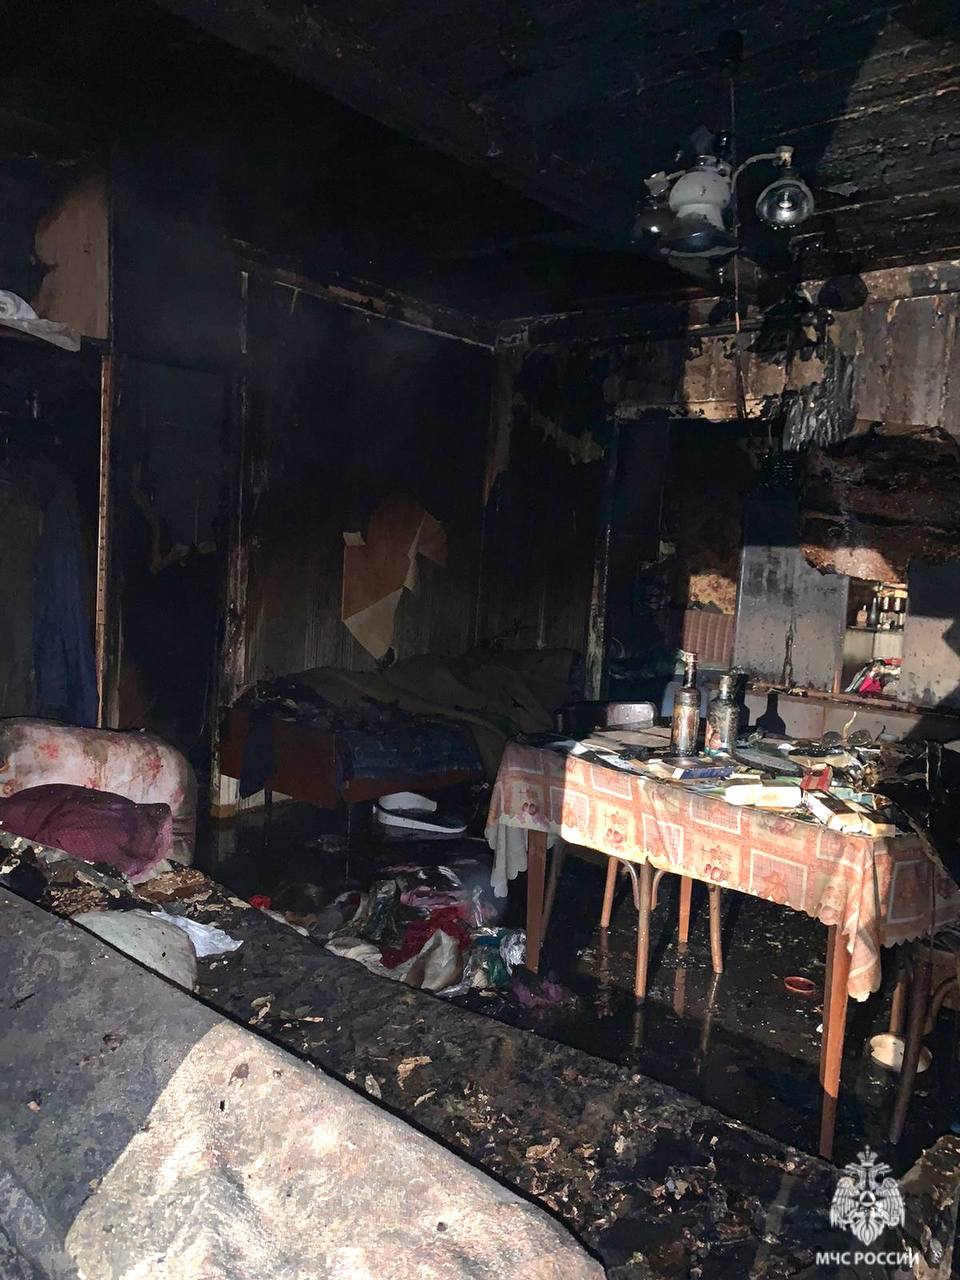 В доме взорвался газ: подробности ЧП в Триполье (фото). Читайте на riosalon.ru